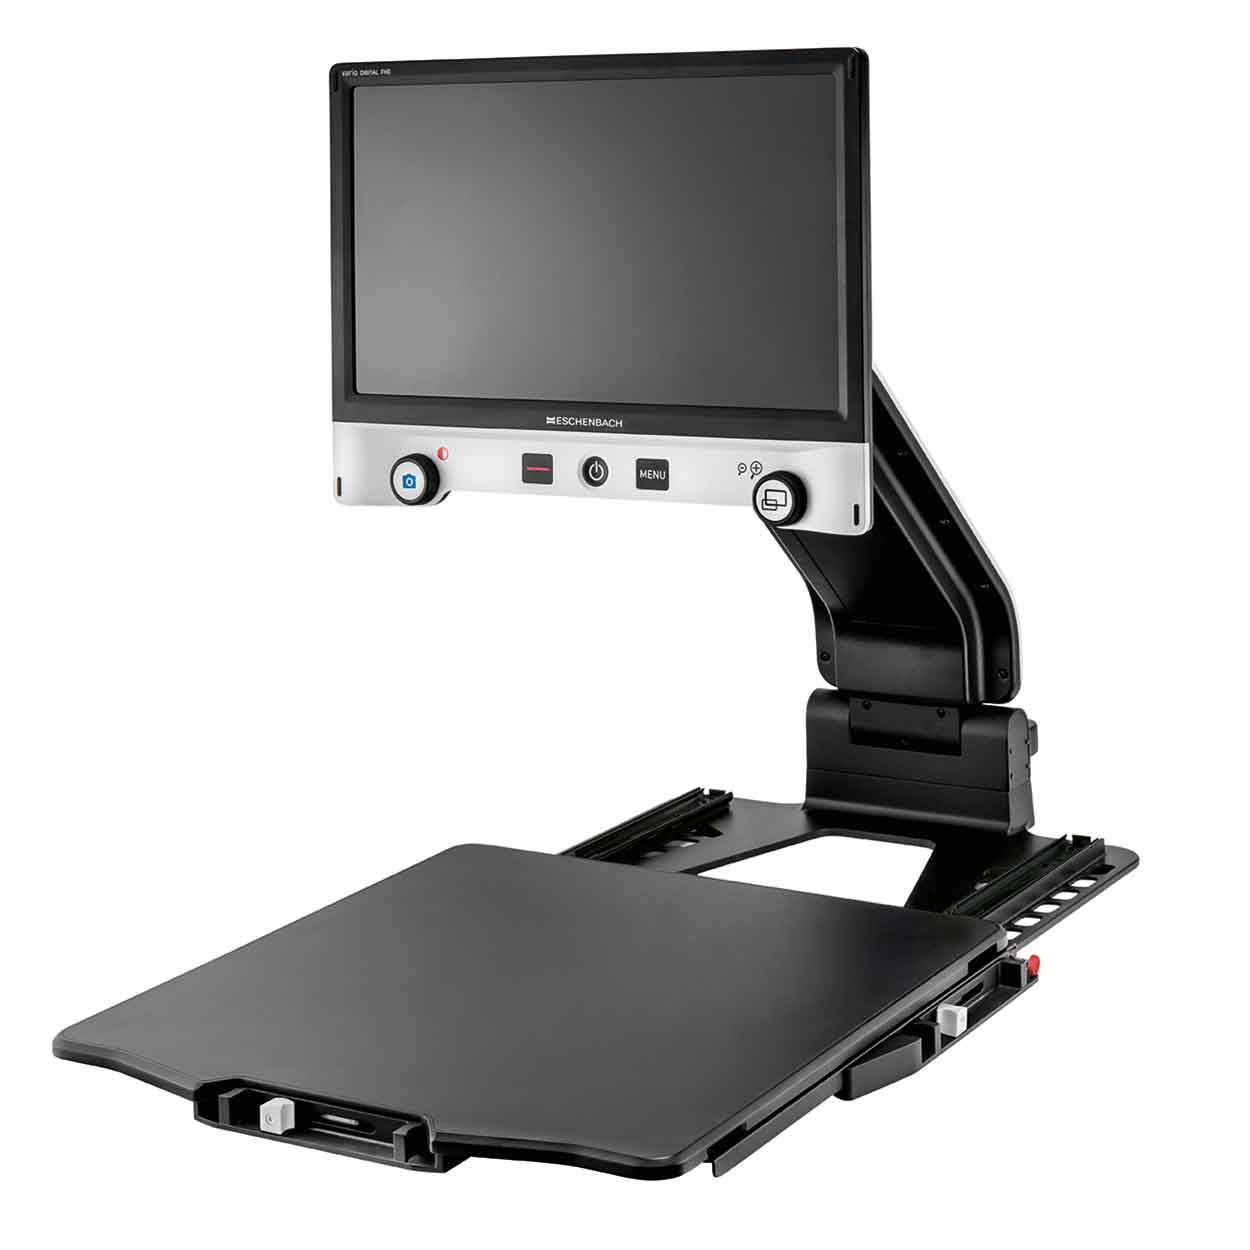 HBM Professional Digitales Ausleseset mit LCD-Bildschirm